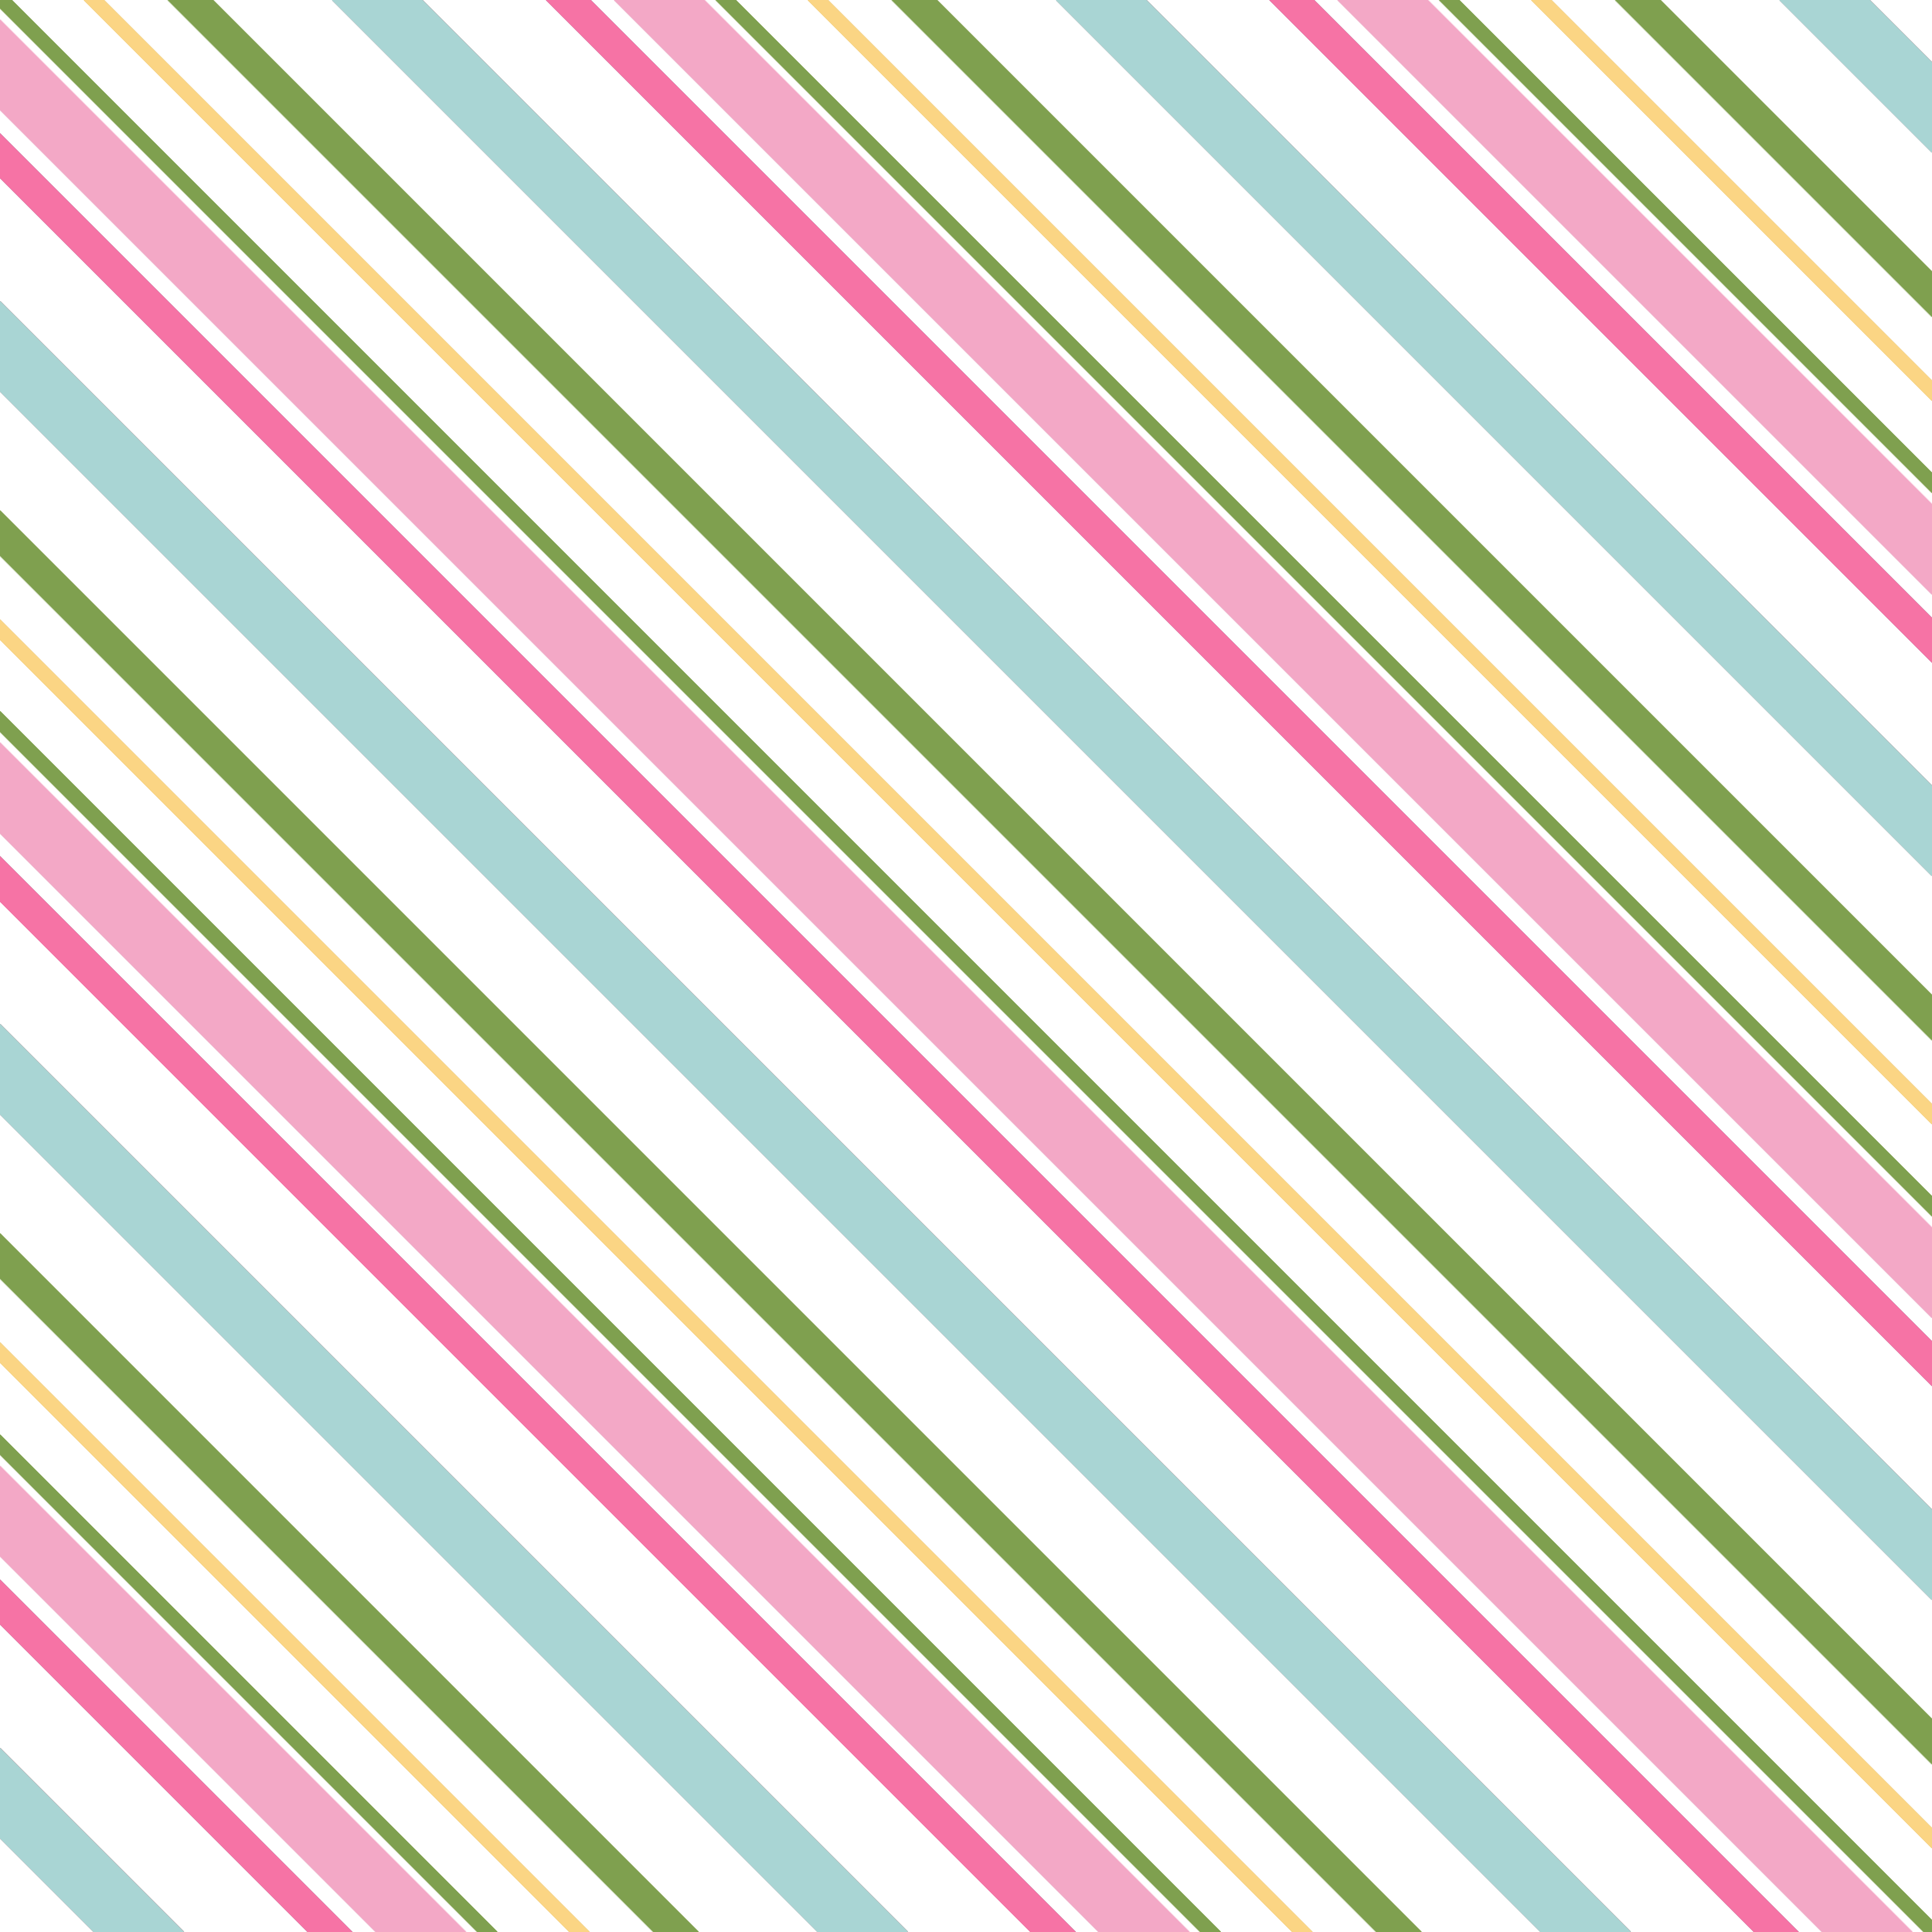 Diagonal Stripes